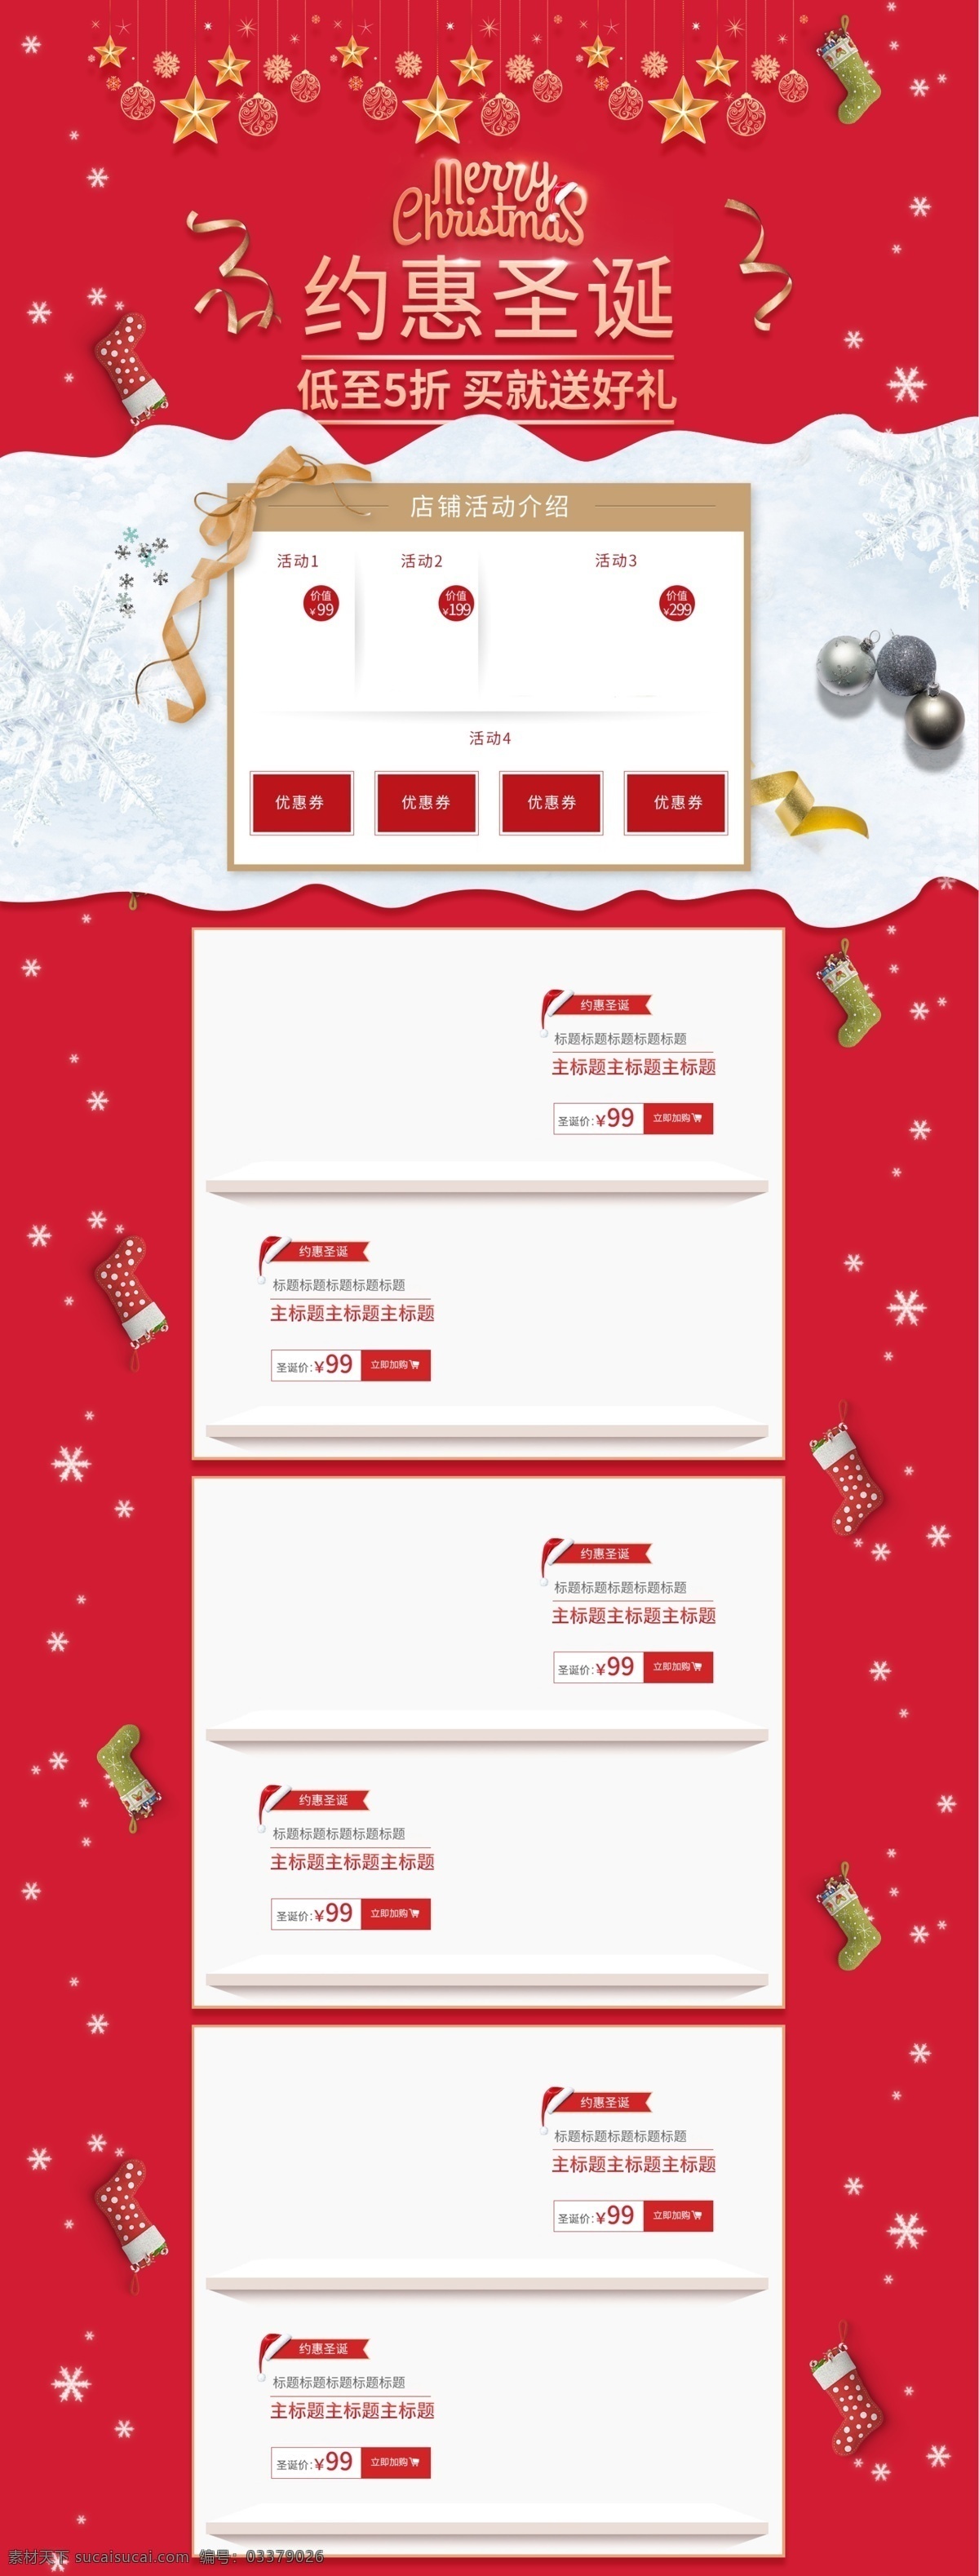 红色 喜庆 星星 圣诞节 电商 淘宝 促销活动 页 模板 促销 活动页